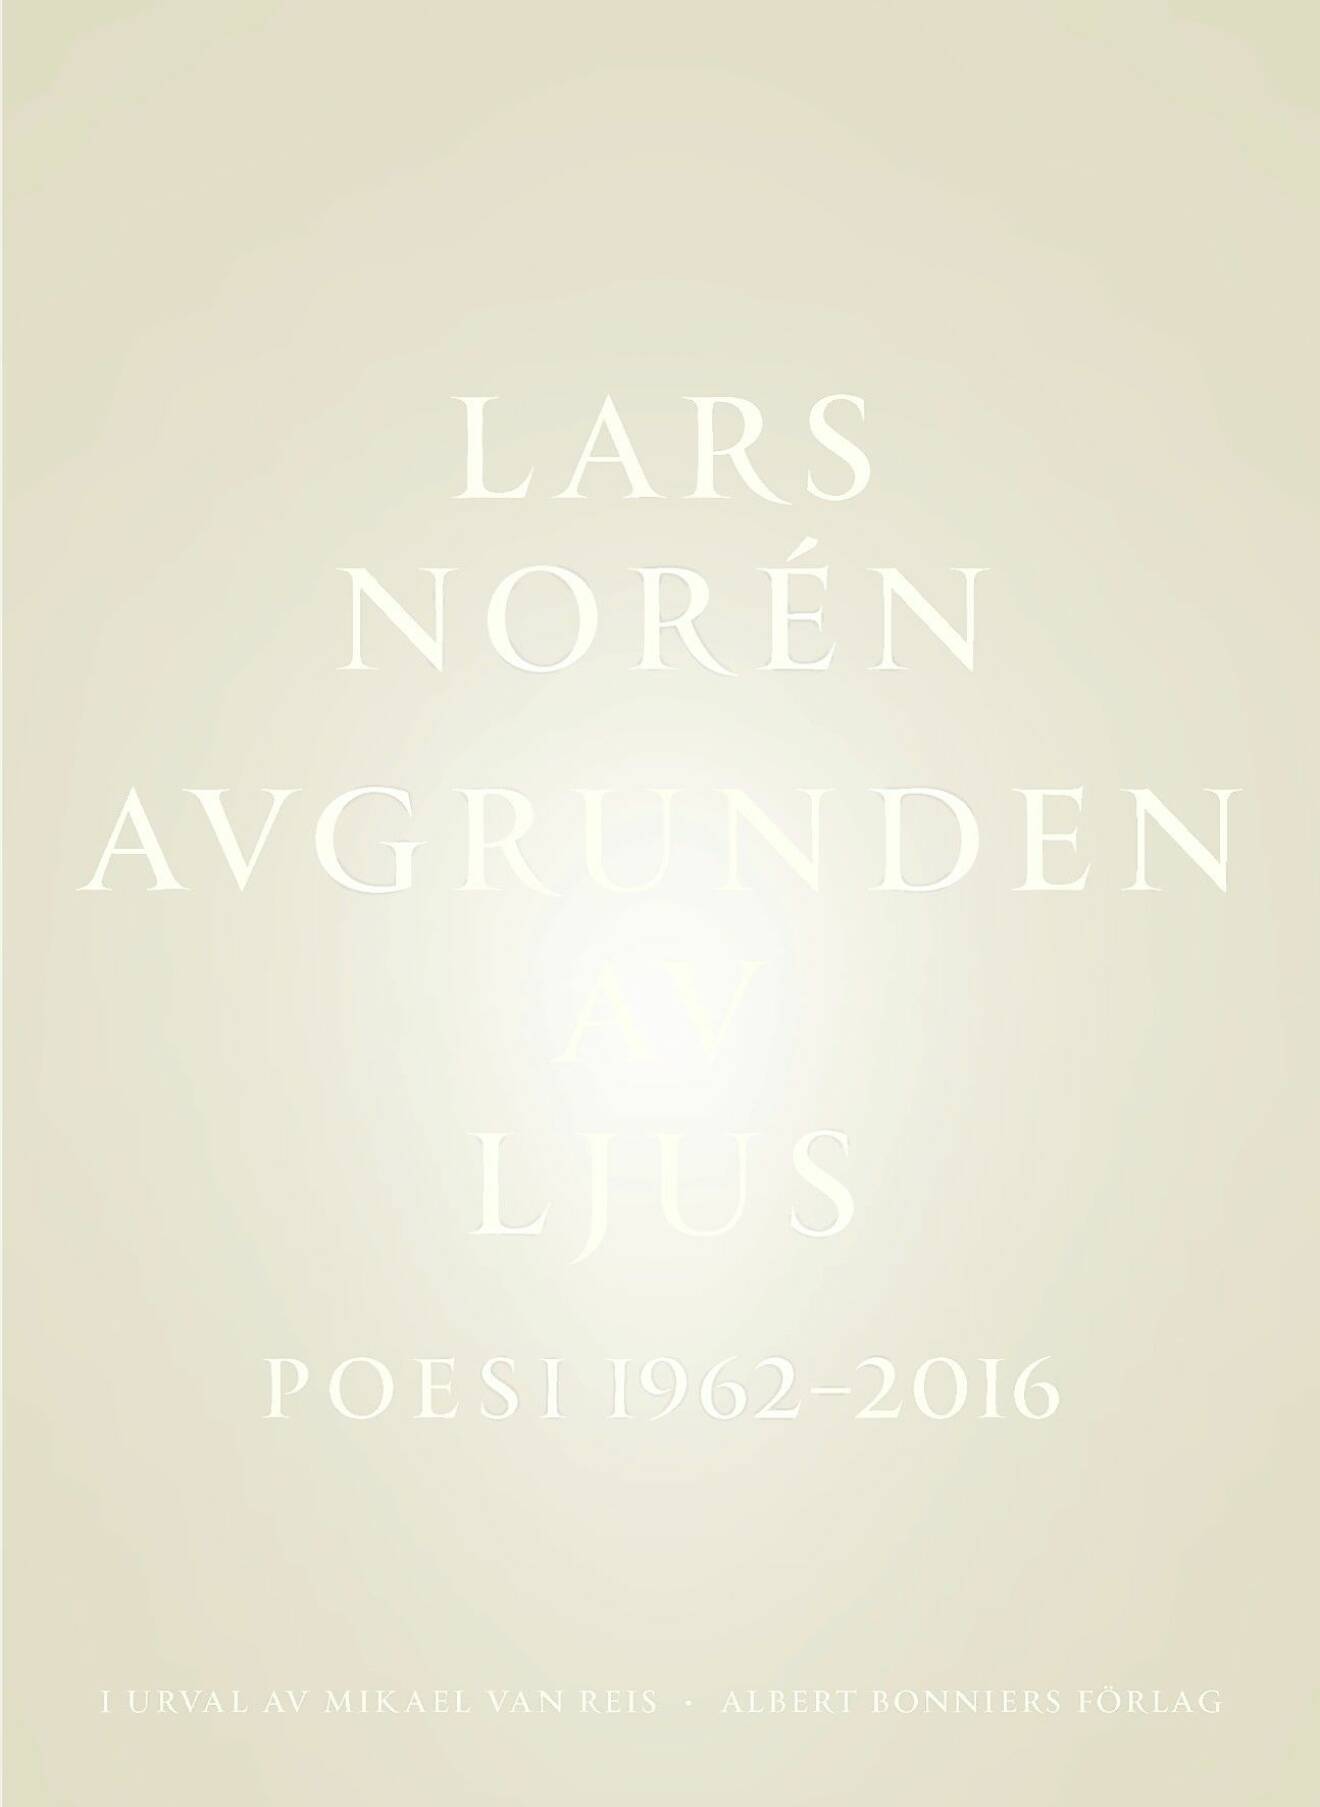 Avgrunden av ljus av Lars Norén, bokomslag